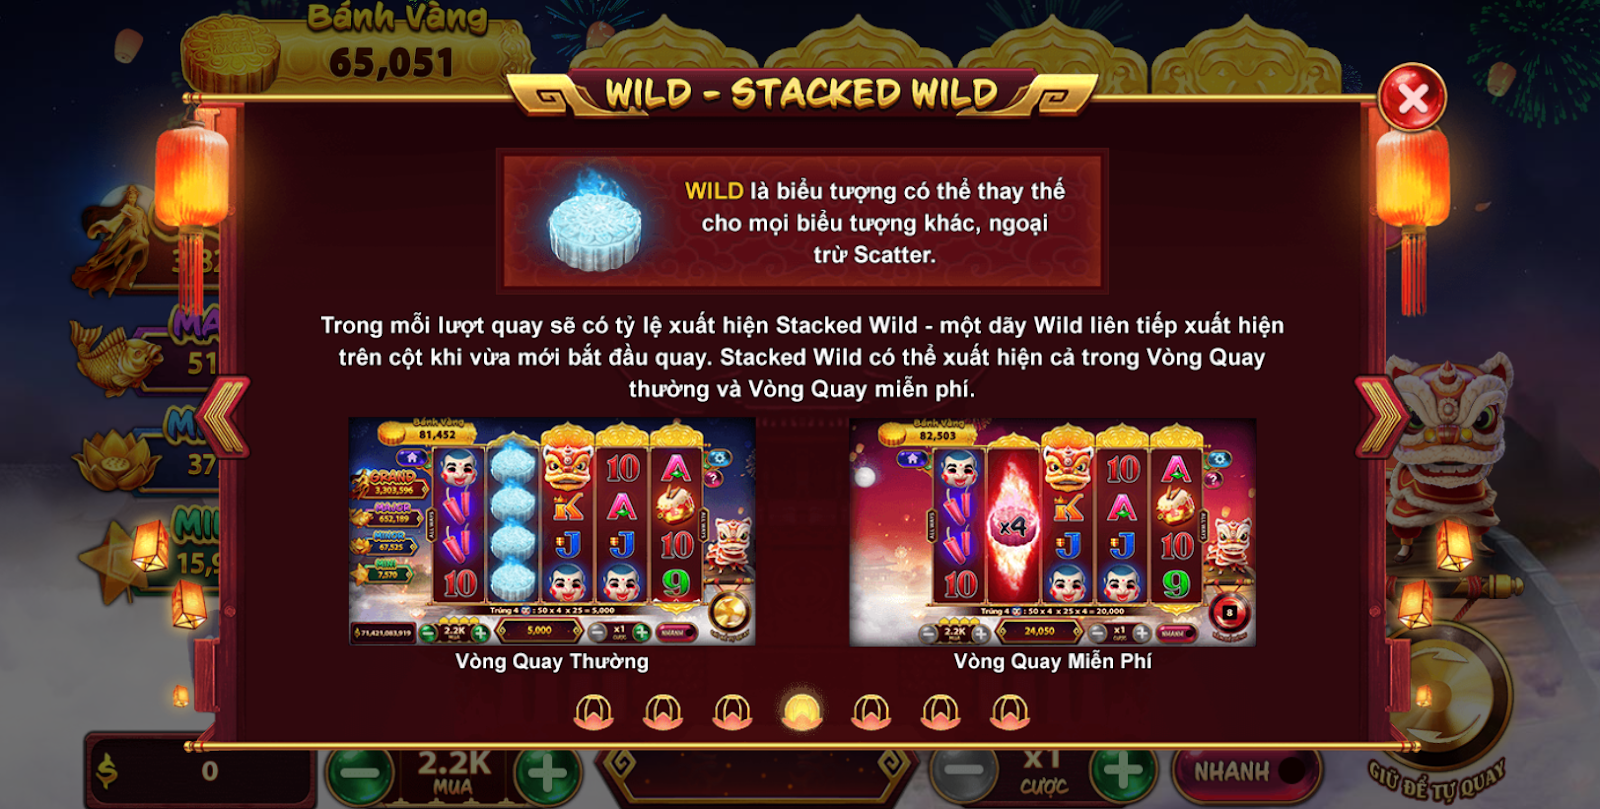 Biểu tượng Wild hoàn toàn mang thể thay thế tất cả biểu tượng trong game chơi ngoài tượng trưng Scatter